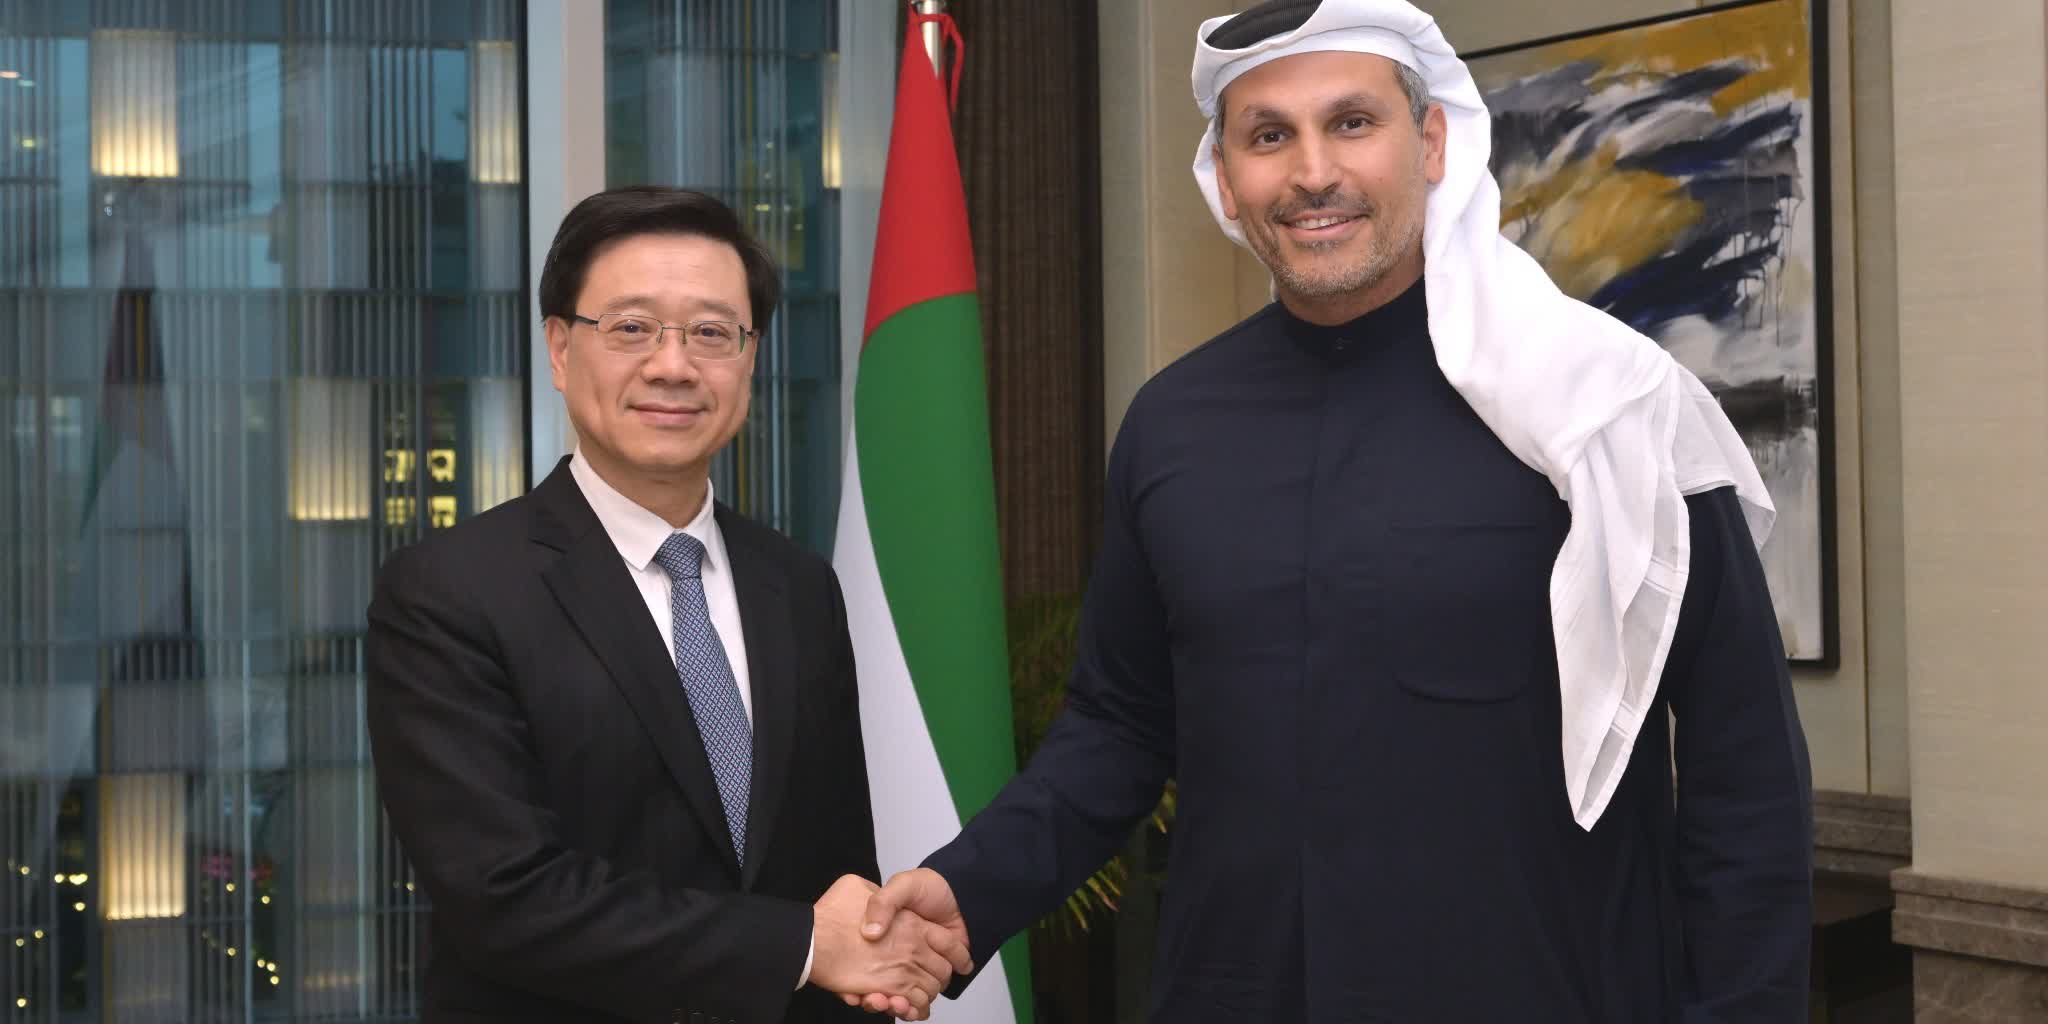 CE begins visit program in United Arab Emirates